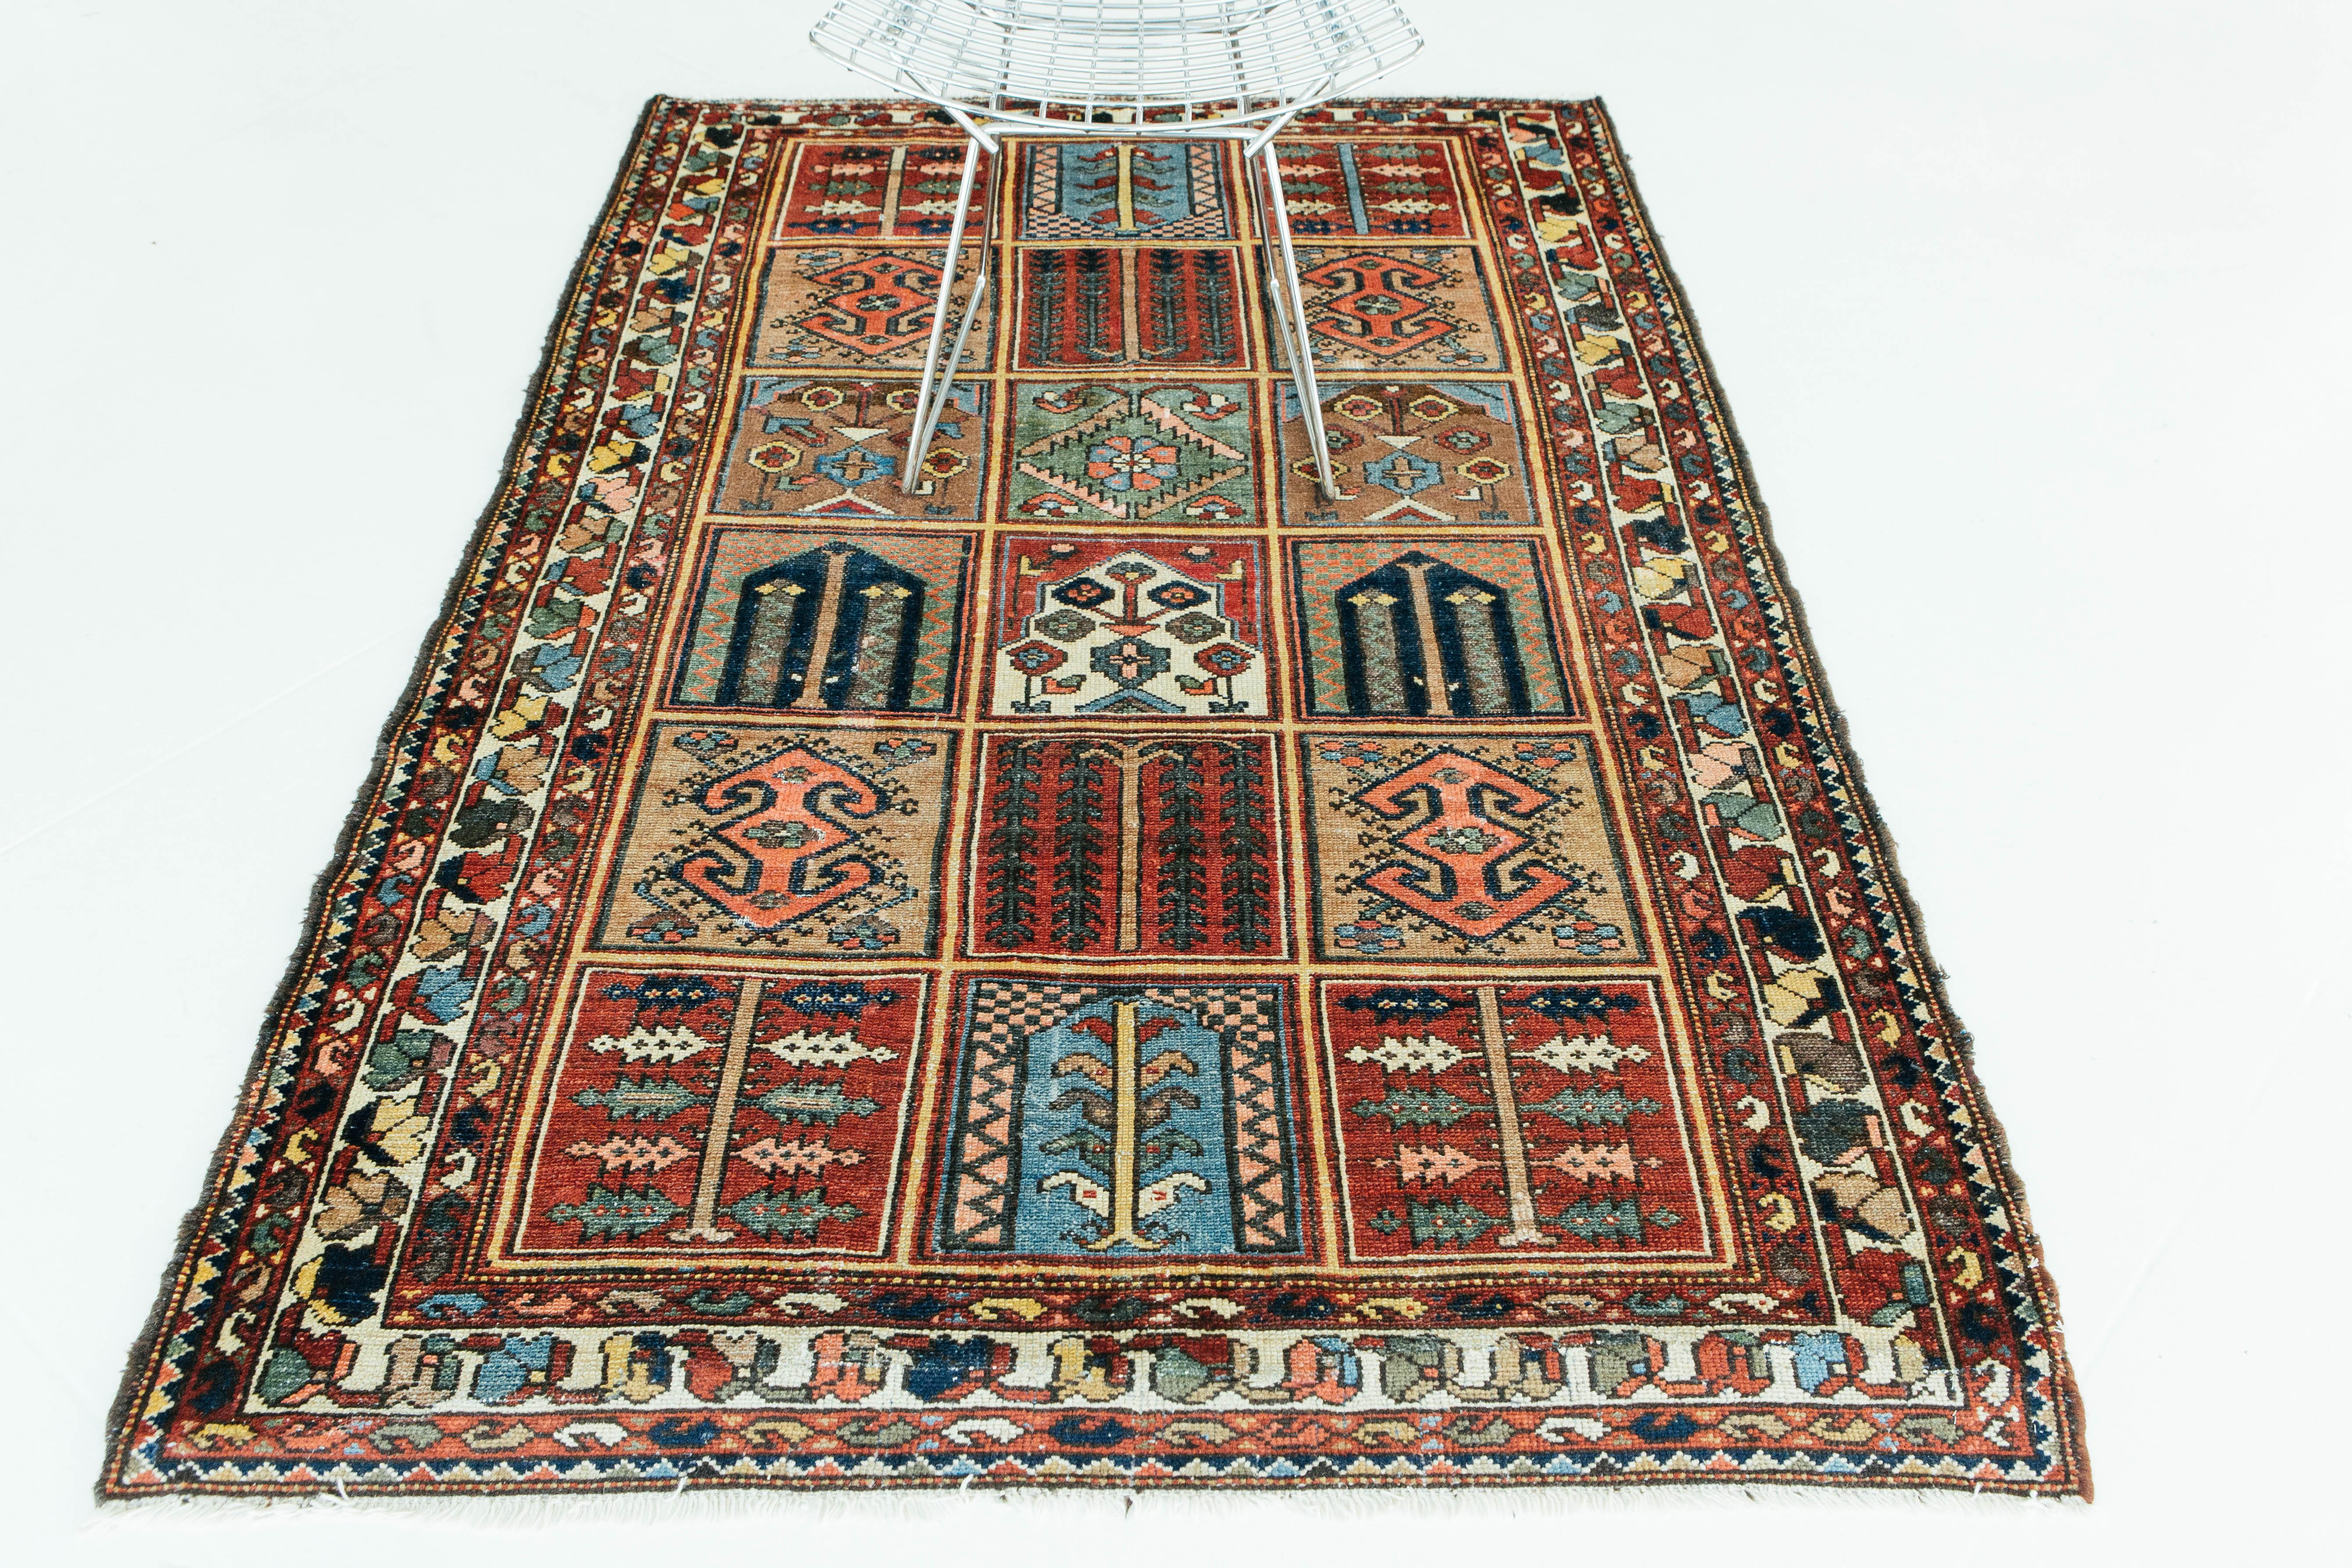 Un ancien tapis Bakhtiari Garden Design/One tissé dans les montagnes Zagros en Iran. Ce tapis au motif de jardin utilise des couleurs vives pour créer des compartiments carrés remplis de motifs floraux, tels qu'un saule, une vigne ou un vase. Cette